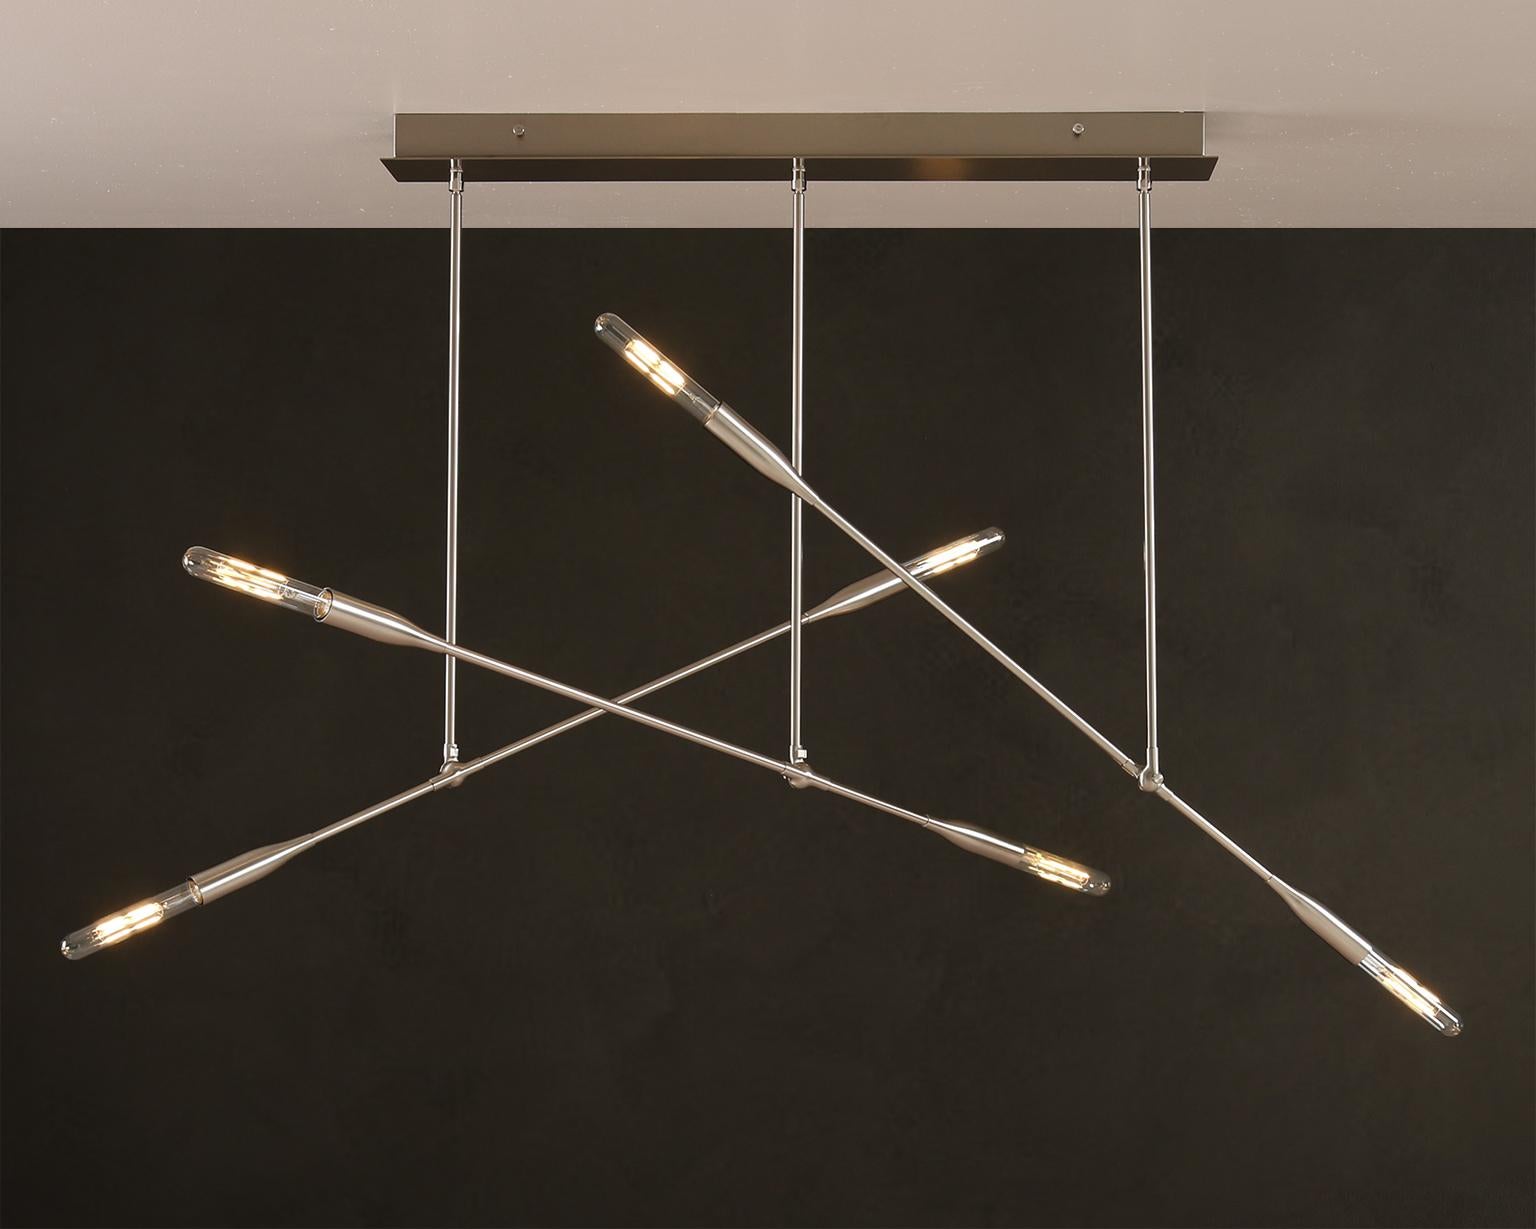 Trois lampes Sorenthia créent des angles spectaculaires sur un dais rectangulaire conçu à la main.  Ce lustre d'inspiration du milieu du siècle présente des ampoules apparentes, des lignes audacieuses et un espace négatif spectaculaire. Les bras